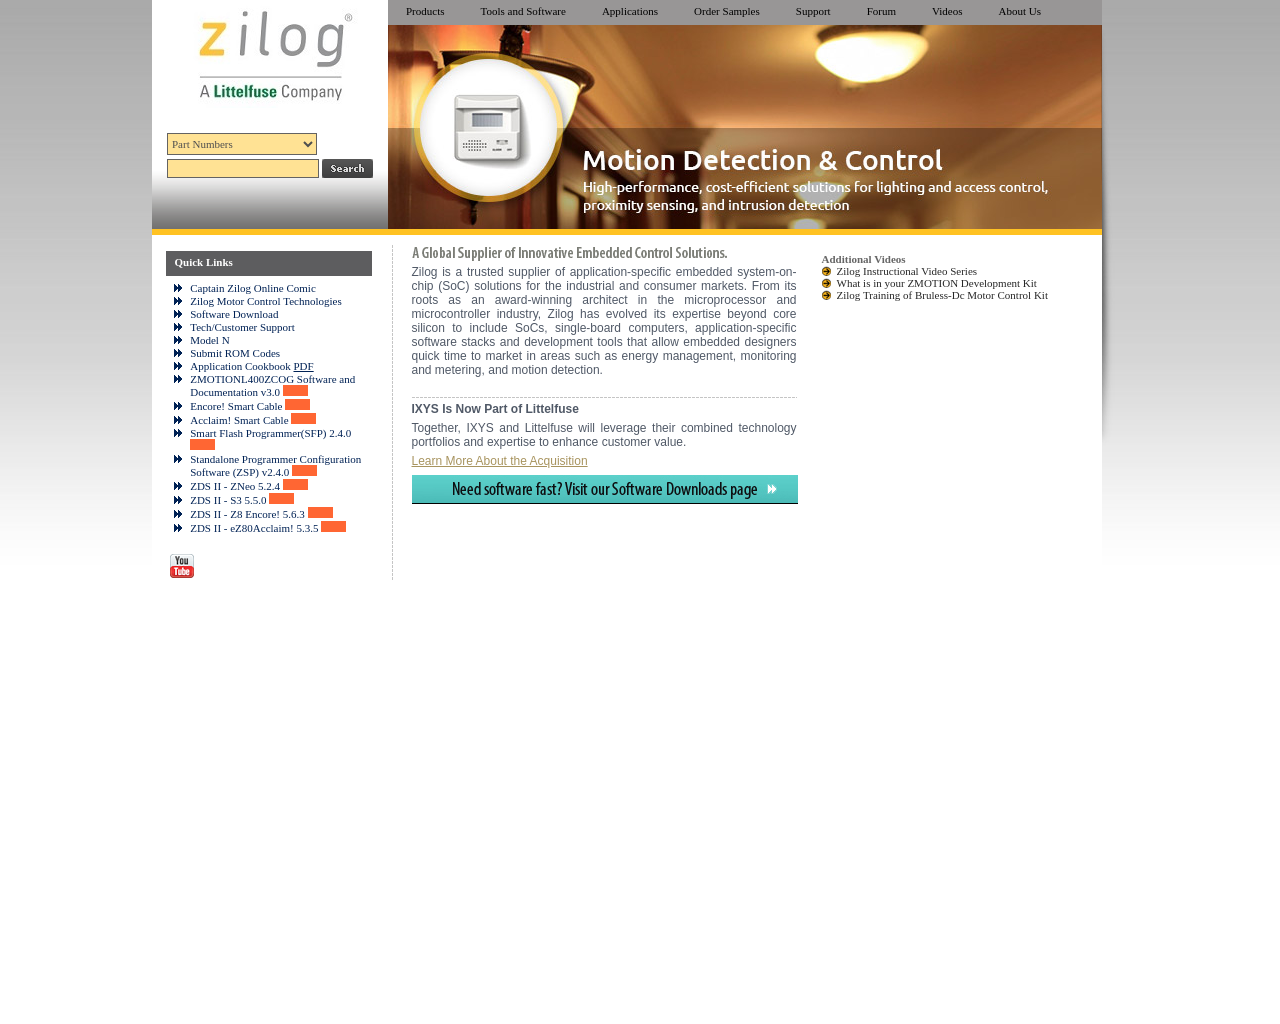 zilog.com